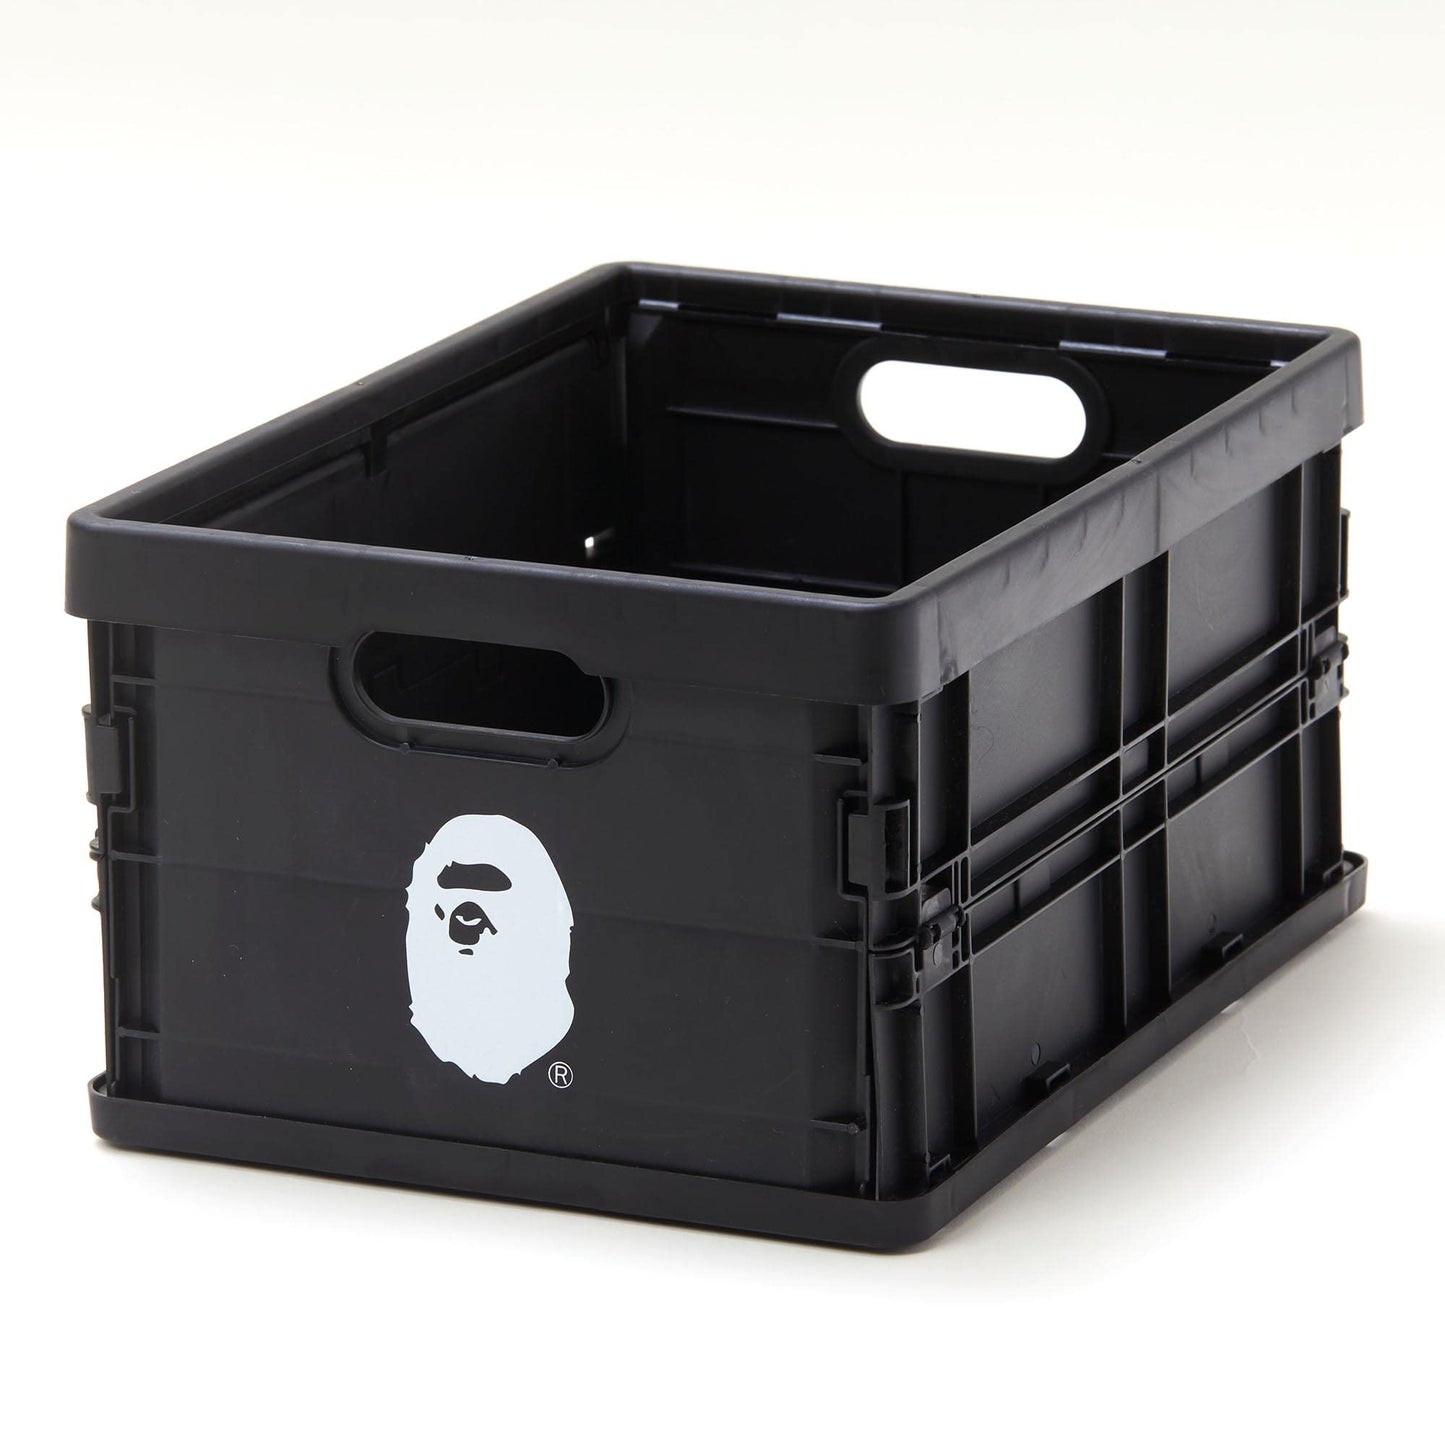 Bape mini plastic storage container box smart book set 2022